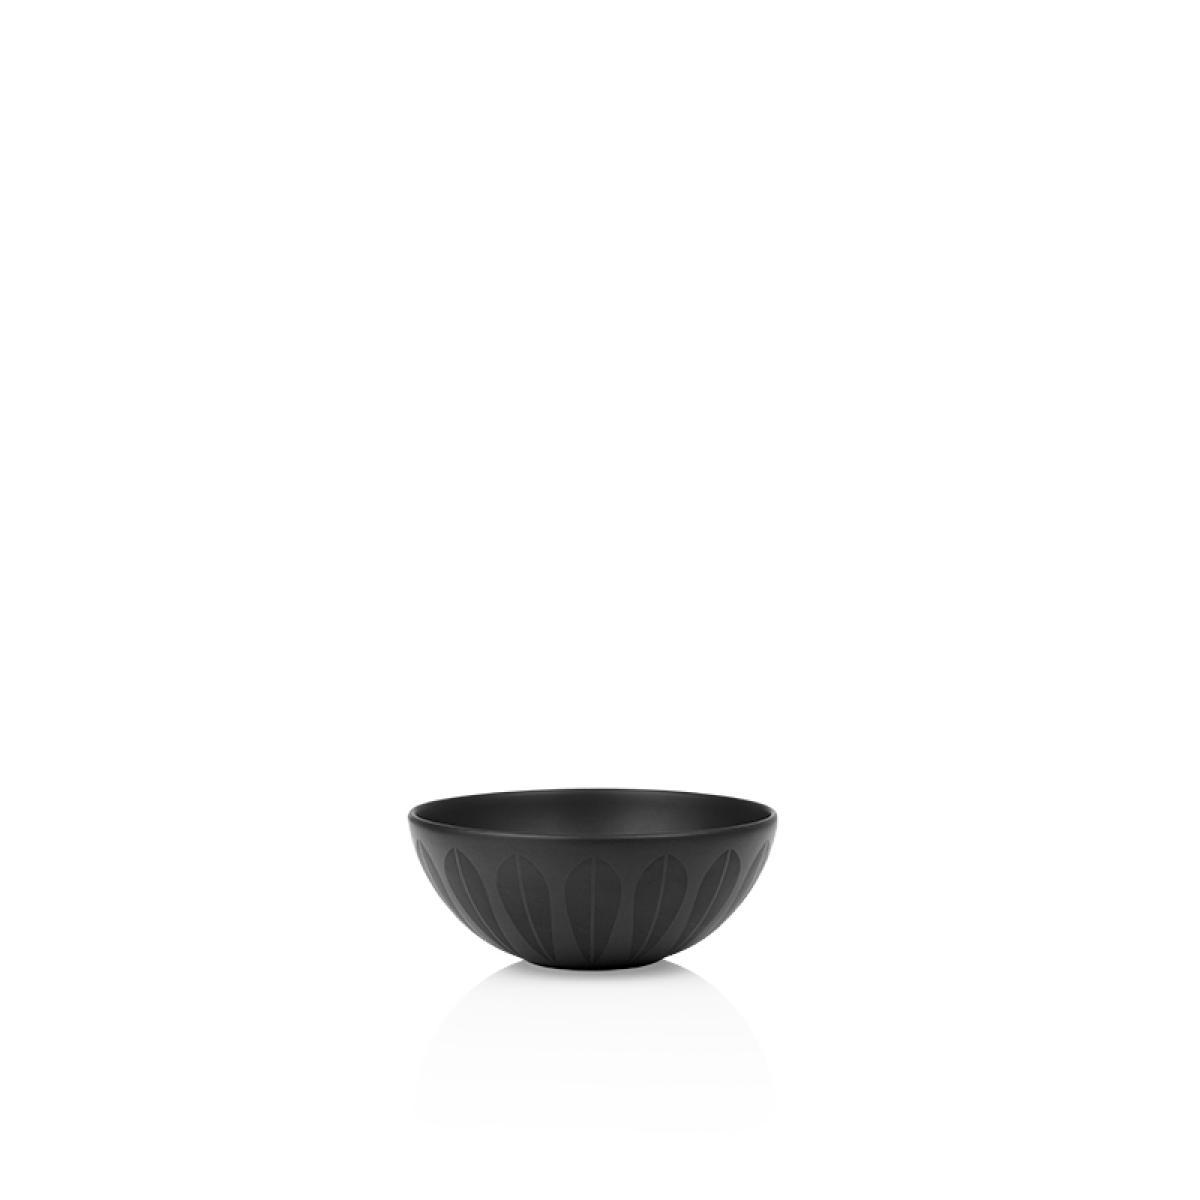 Lucie Kaas Arne Clausen Bowl Black, 12cm